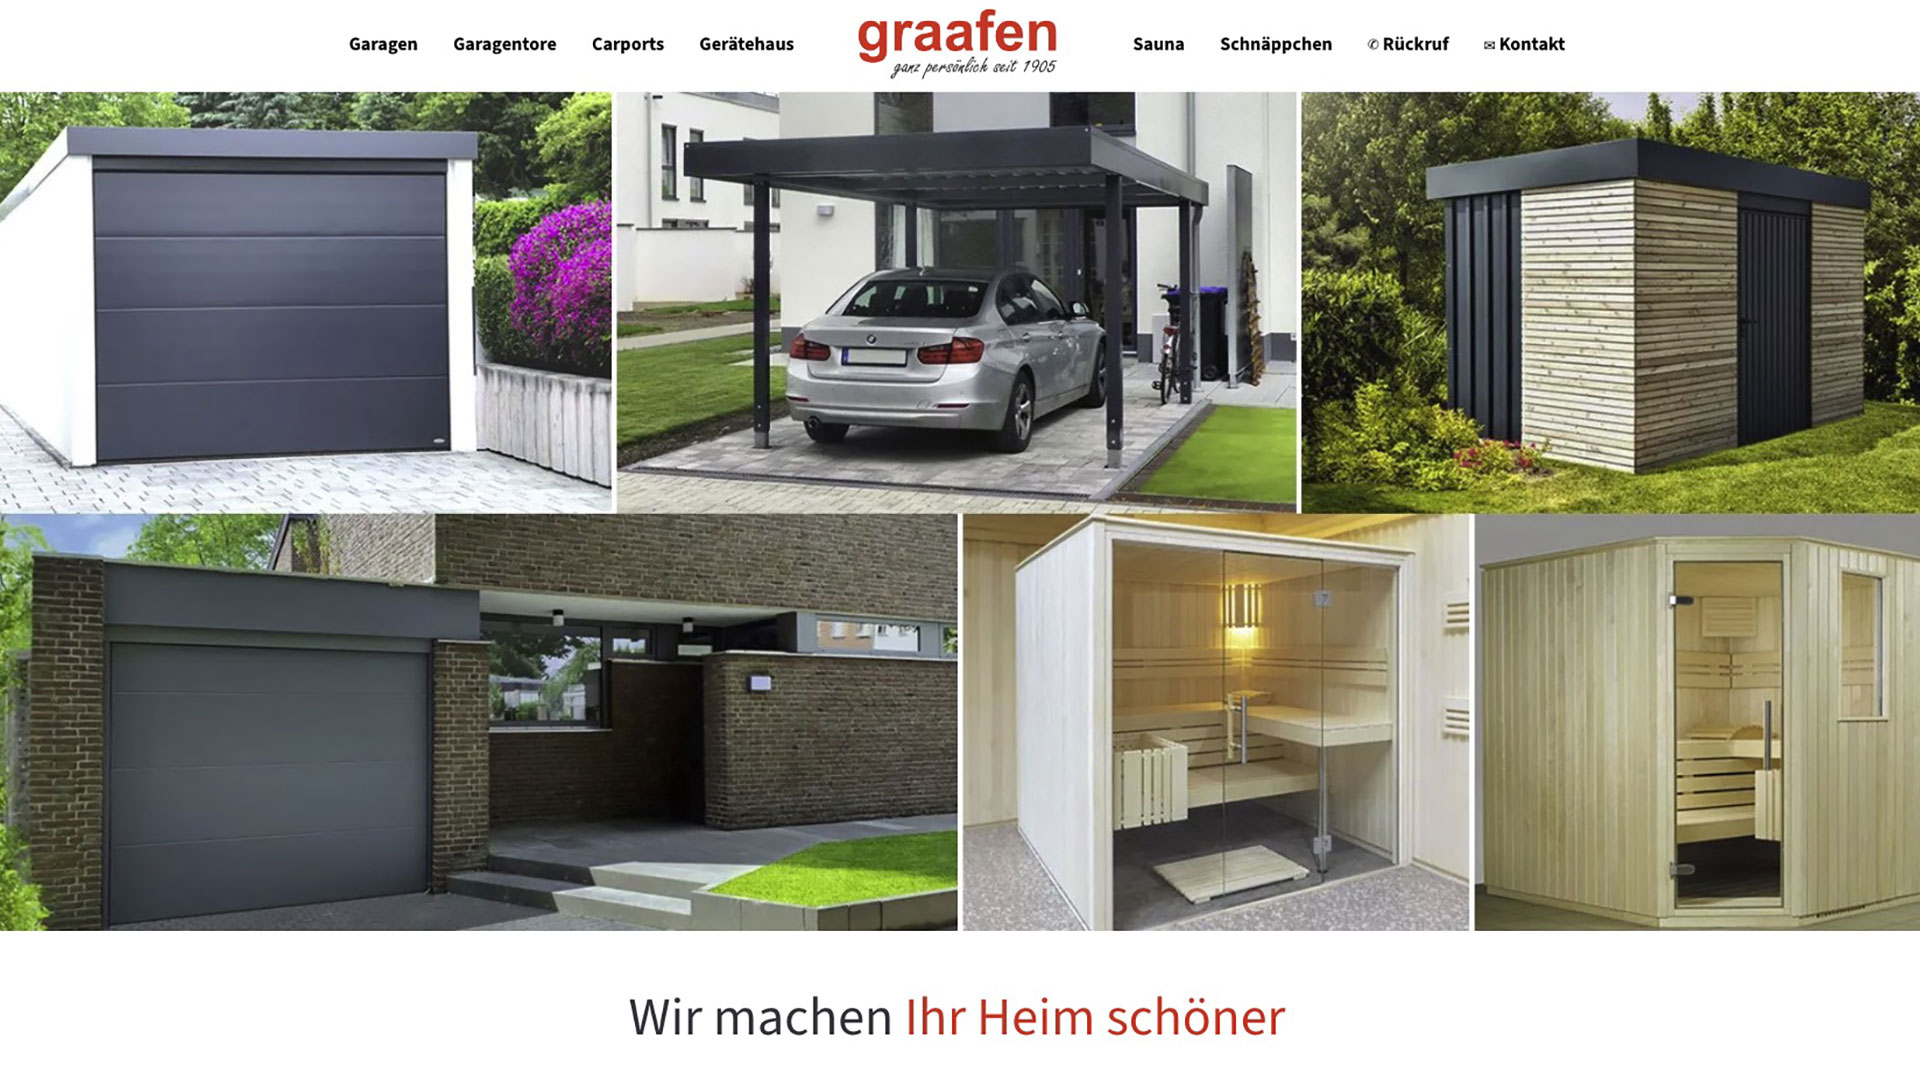 Franz Graafen Söhne GmbH & Co. KG